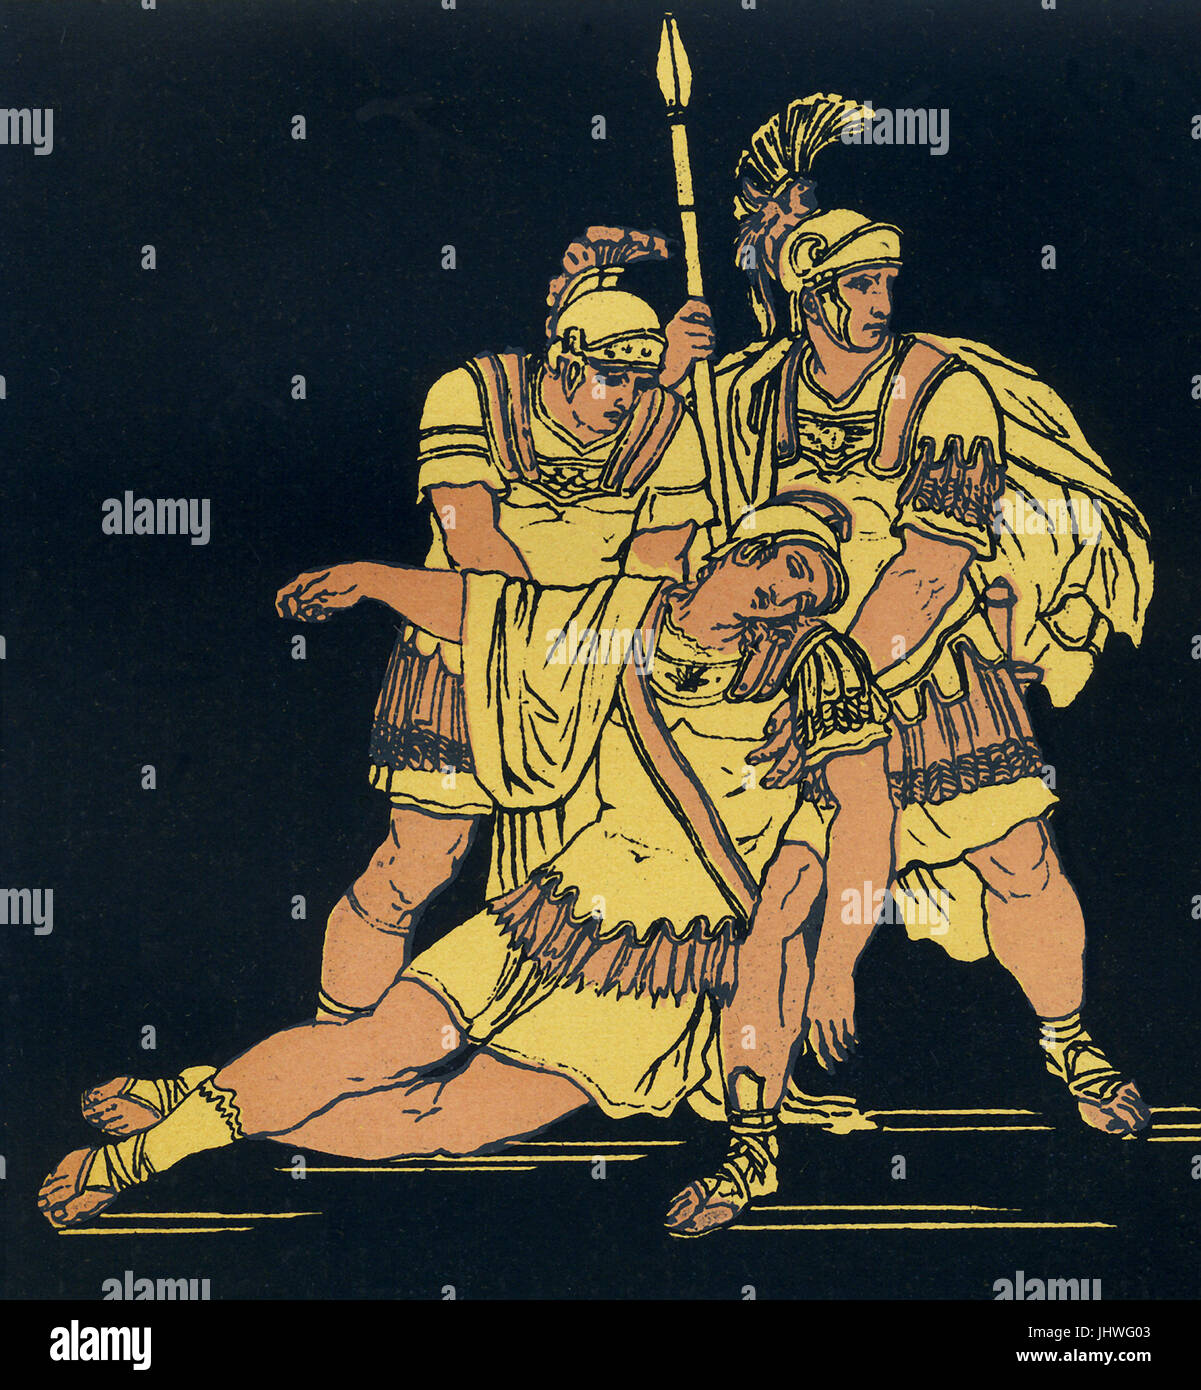 Lausus war der Sohn von der etruskischen König Mezentius. Er kämpfte gegen Aeneas und seine Anhänger, die Troja geflohen, nachdem die Griechen Troja erobert und die Stadt verbrannt. Die Geschichte dieser Krieger erscheint in Vergils Aeneis. Nachdem Aeneas Mezentius in der Schlacht verwundet, Lausus kommt zur Verteidigung seines Vaters und Aeneas dann schlägt beide. Diese Illustration um 1900 zeigt Lausus, unterstützt von seinen Männern wie er in ihren Armen stirbt... Stockfoto